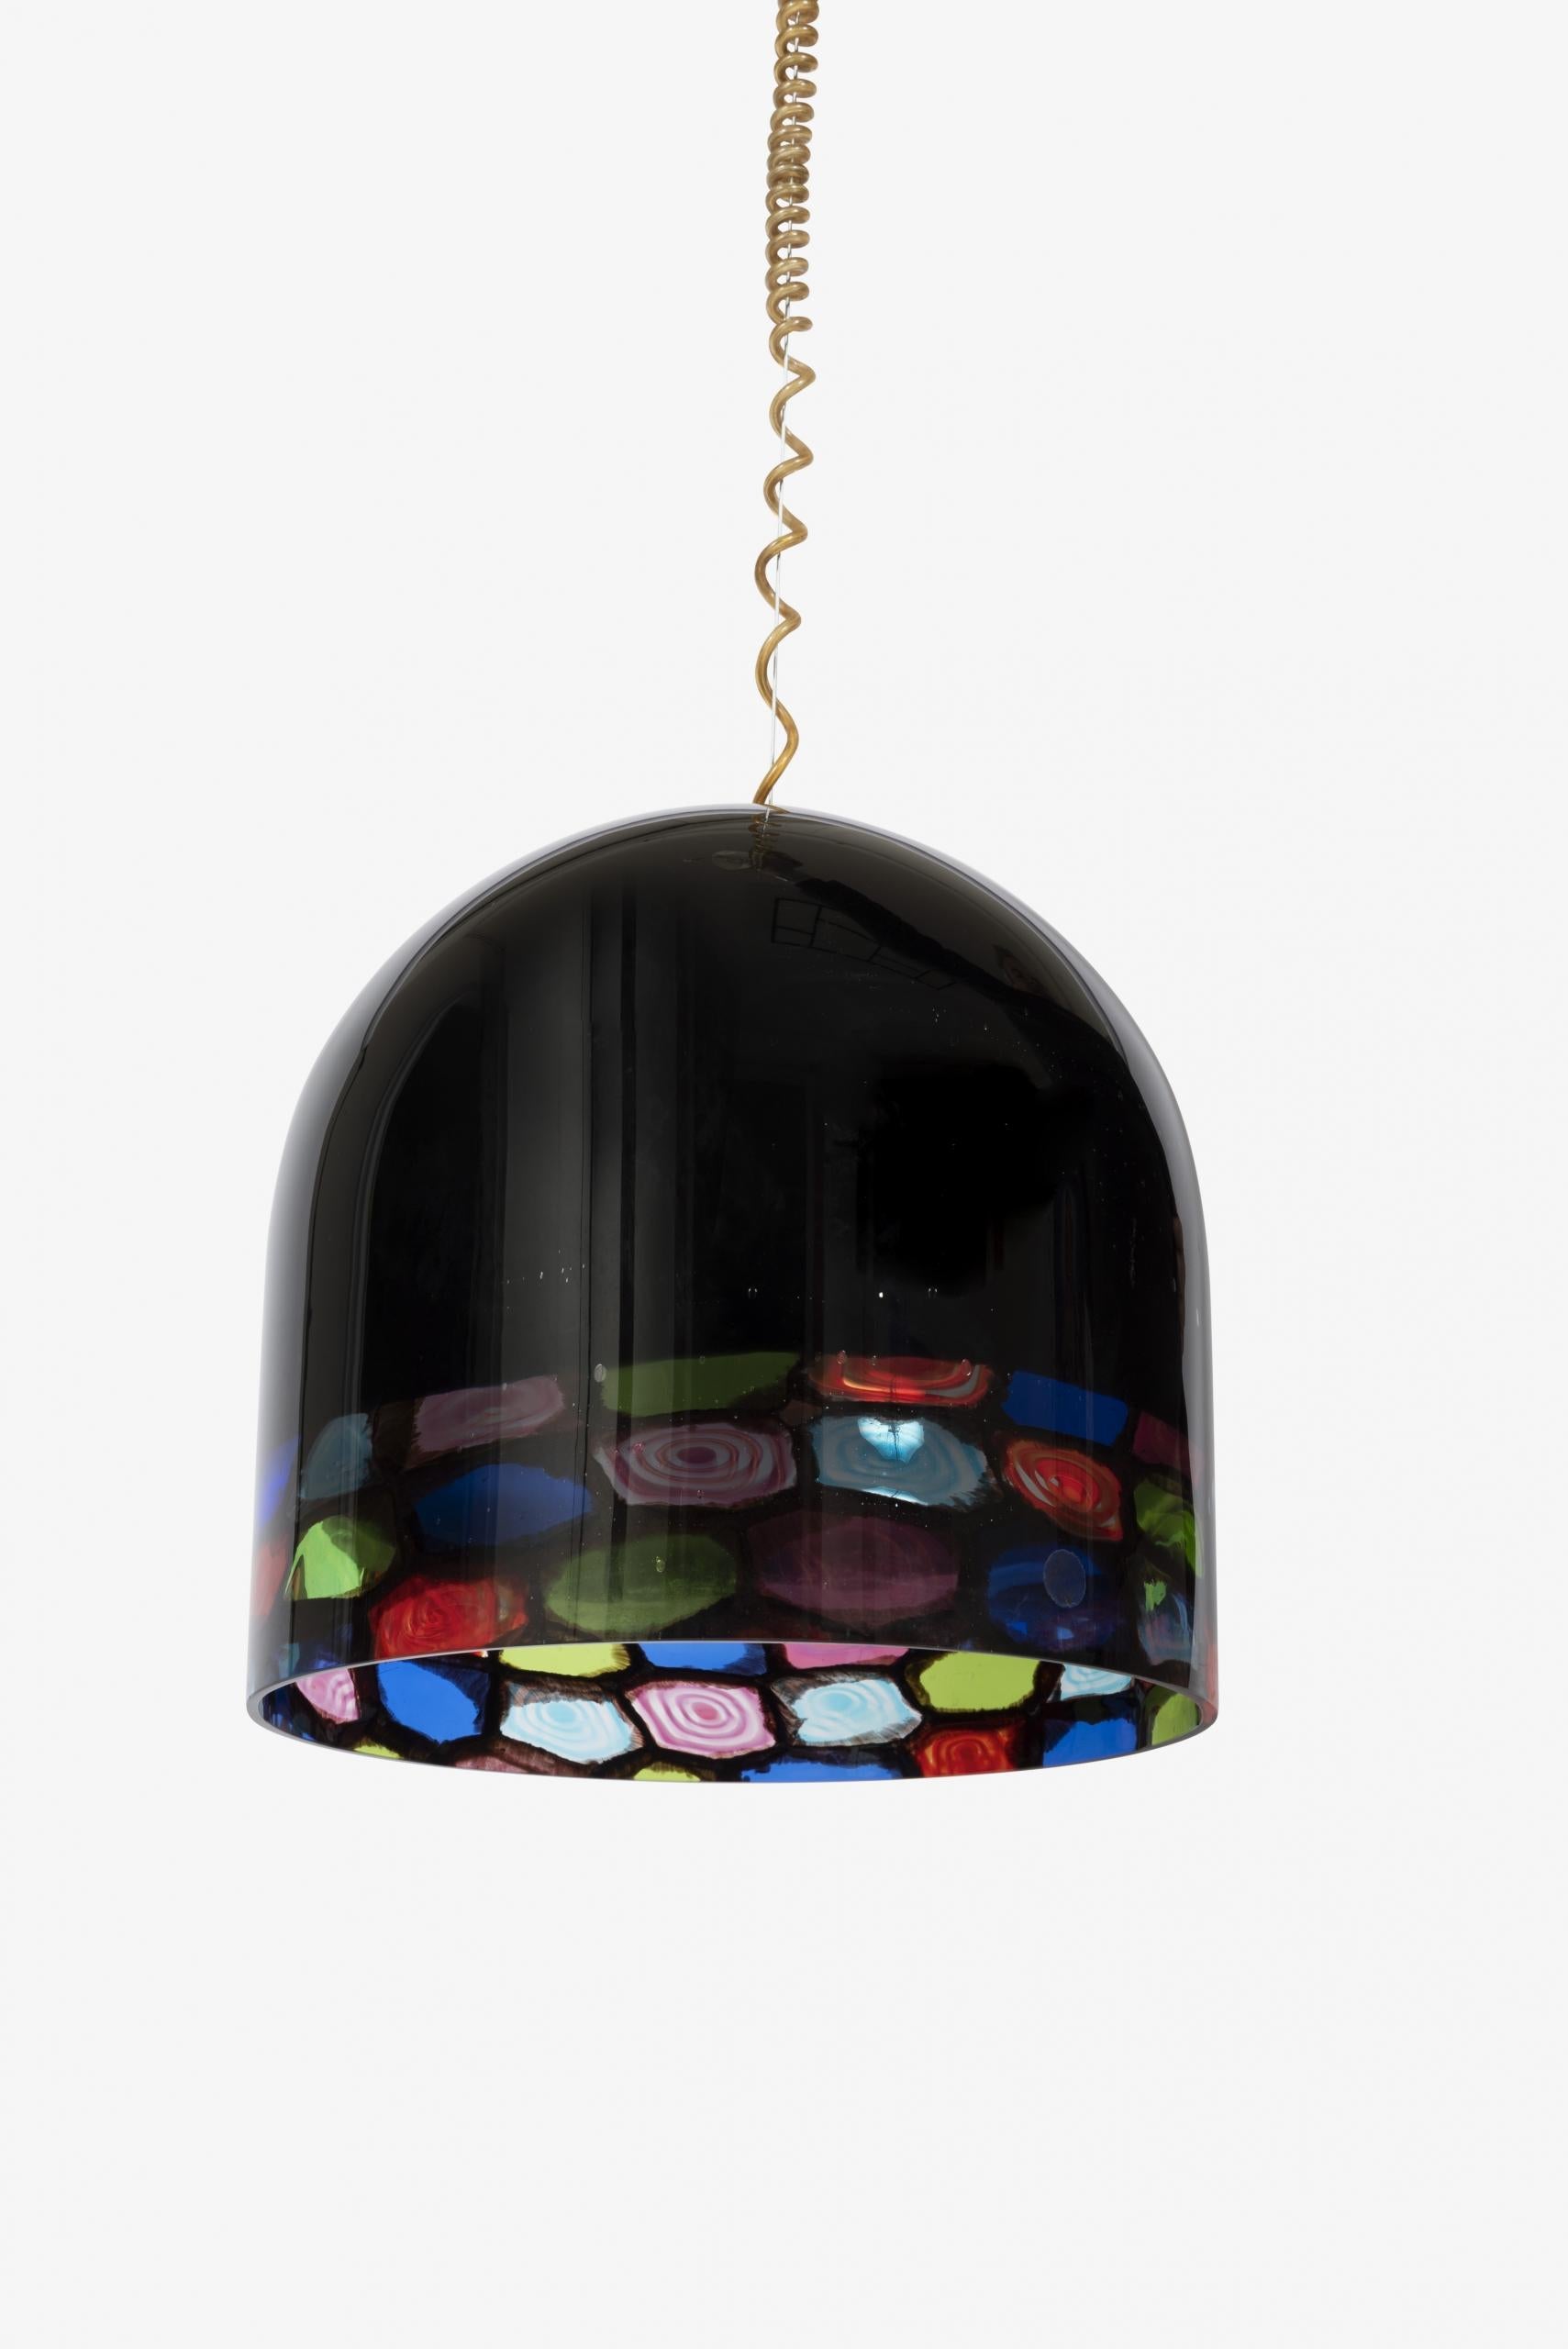 Abat-jour multicolore en verre de Murano des années 1970, conçu par Noti Massari pour Leucos, Italie.

La lampe est suspendue au plafond par un câble d’acier unique, entouré d’un câble électrique spiralé (réglable pour la suspension).

Signature